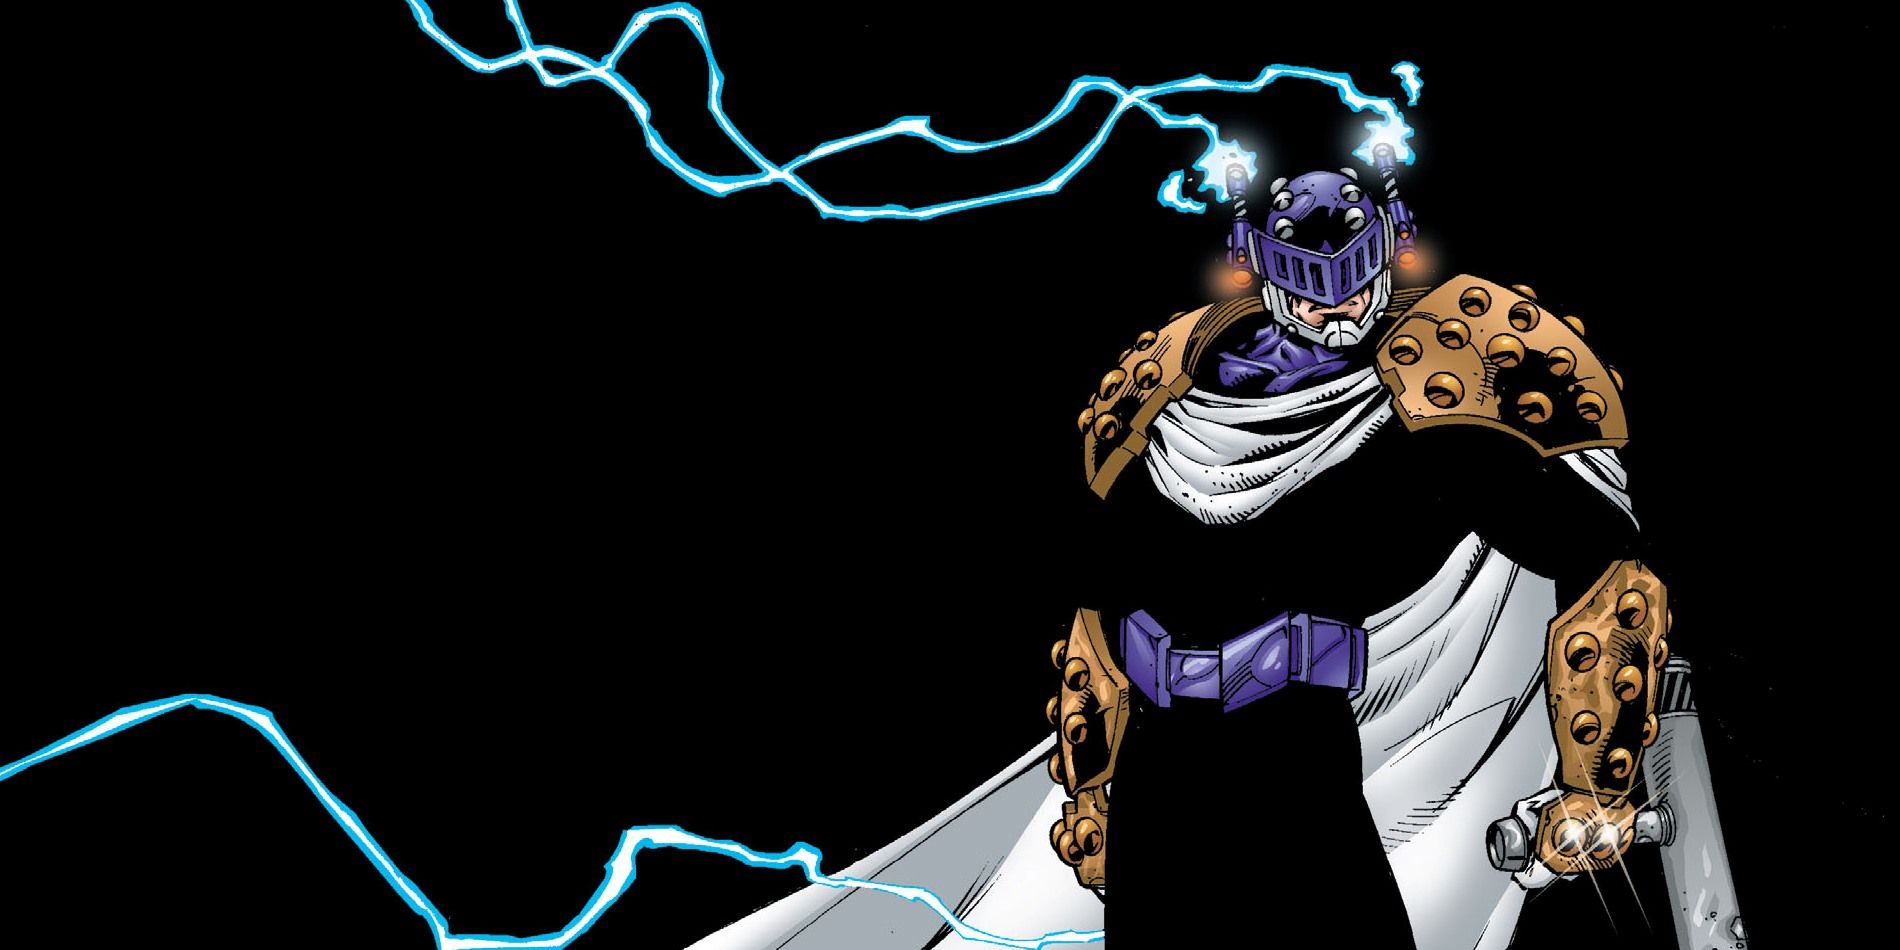 An image of comic art depicting Prometheus from DC Comics